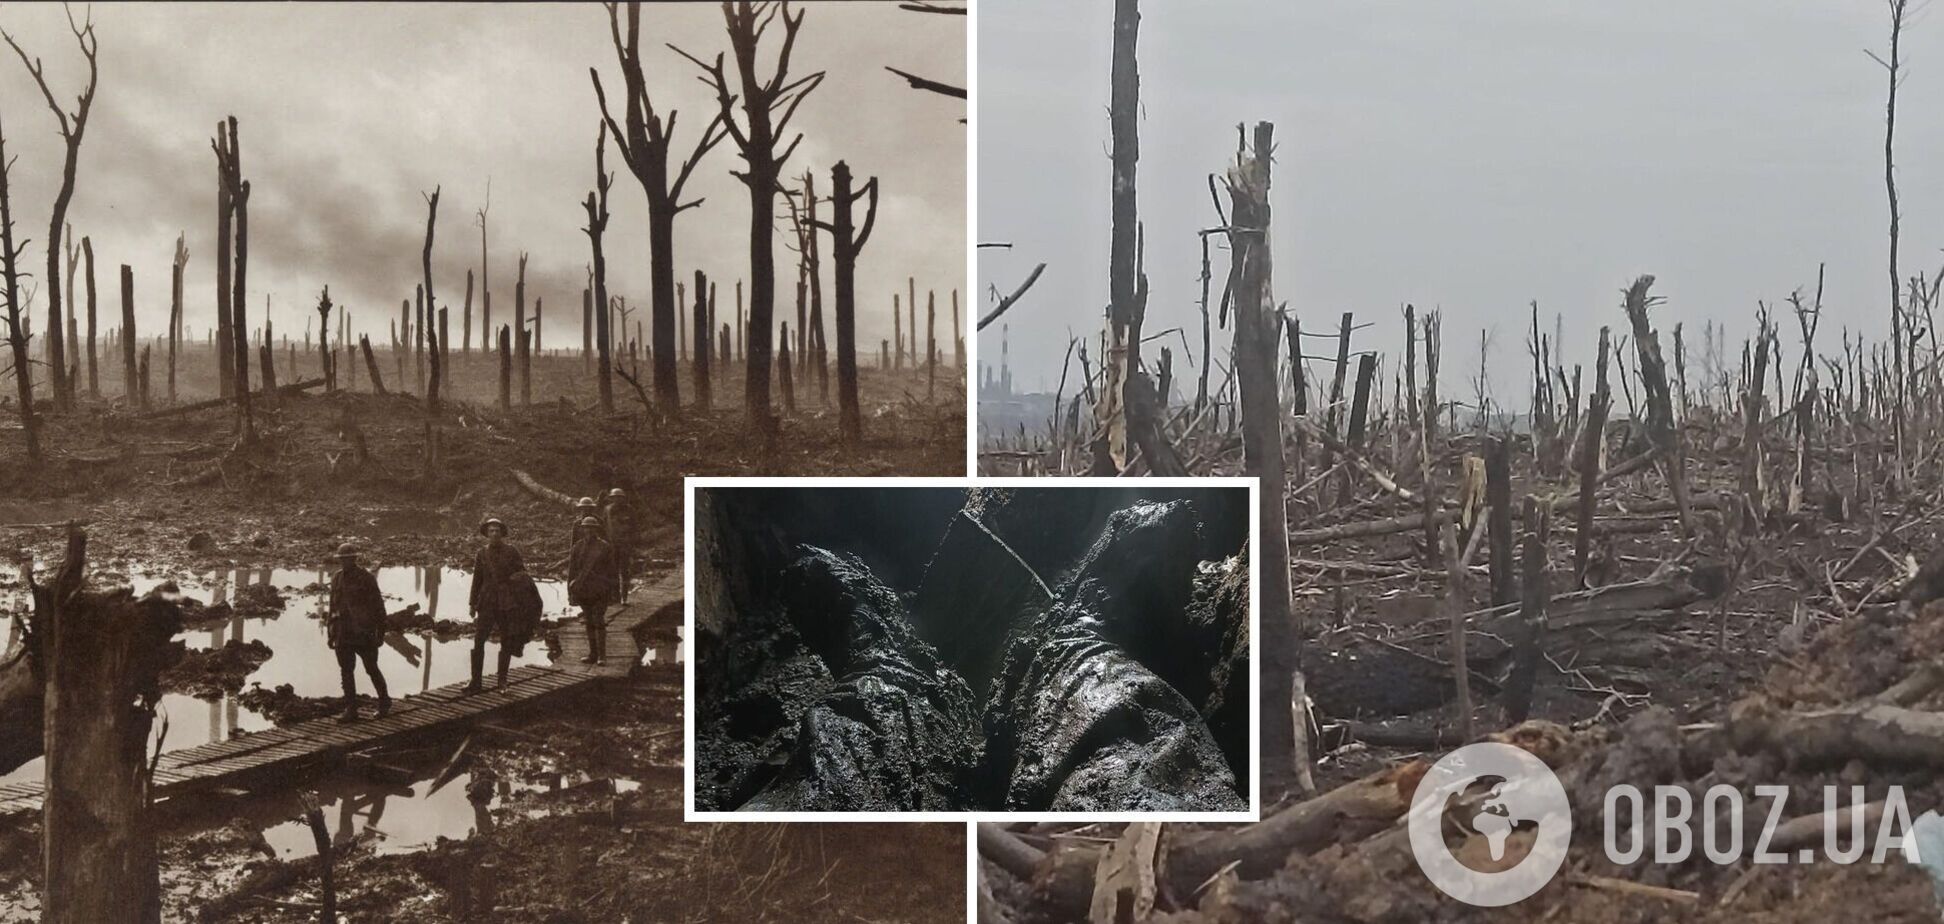 Випалена земля і пів метра води в окопах: у мережі показали свіжі фото з Бахмута і світлини часів Першої світової війни